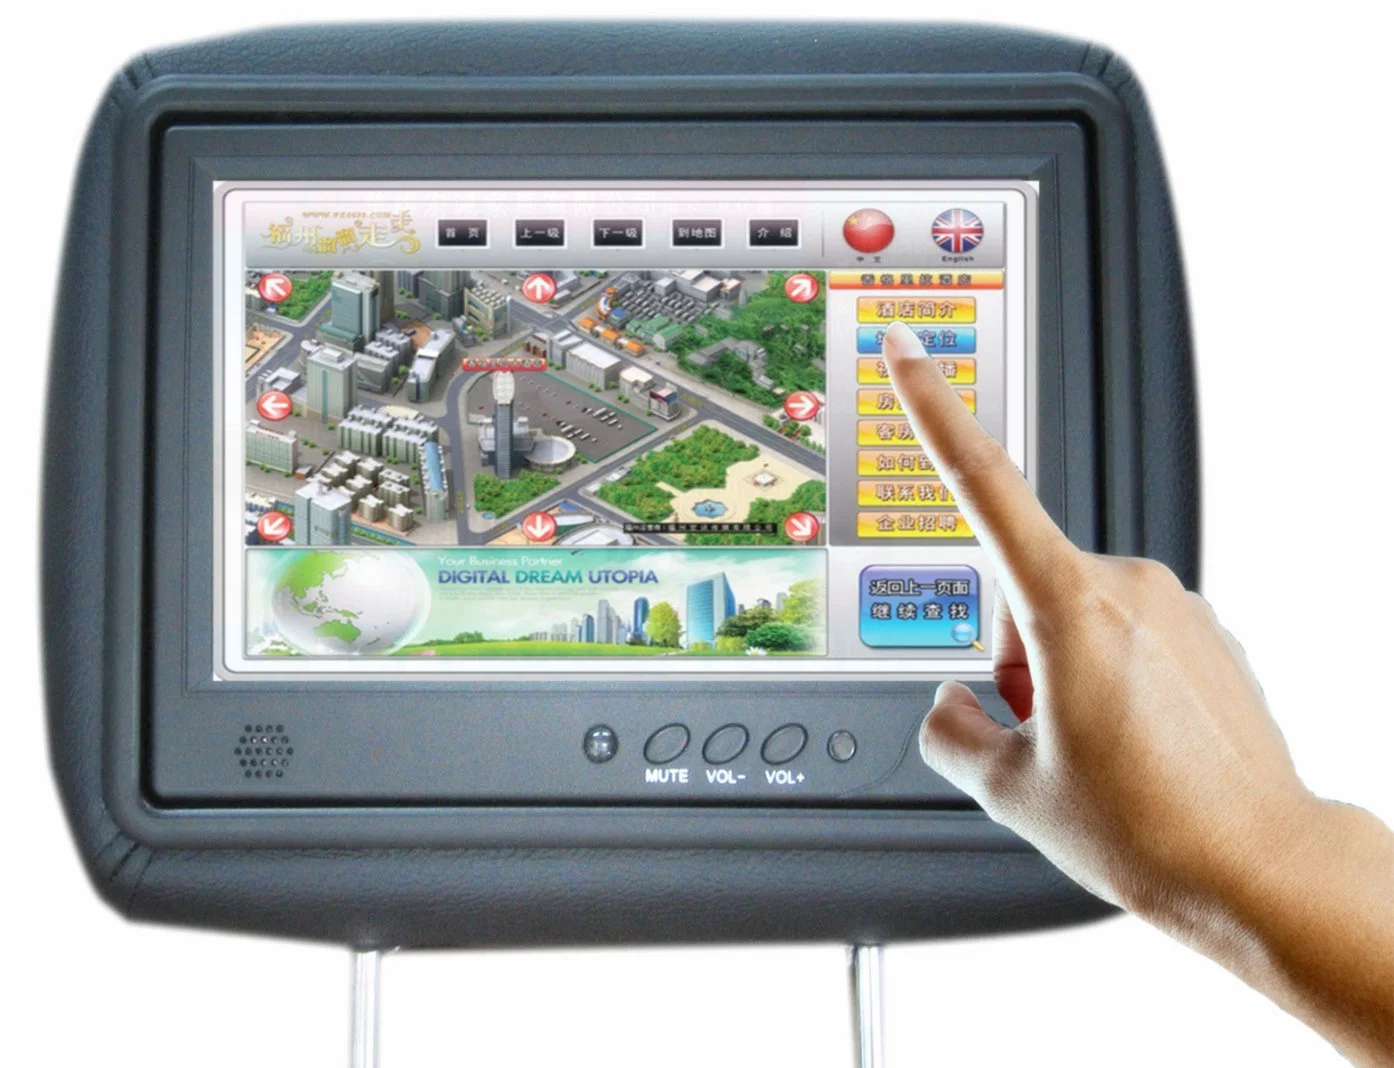 7 polegada de Táxi-de-cabeça publicidade LCD Monitor Placa Ad 9 polegada de Digital Signage Táxi Informação Backseat Publicidade